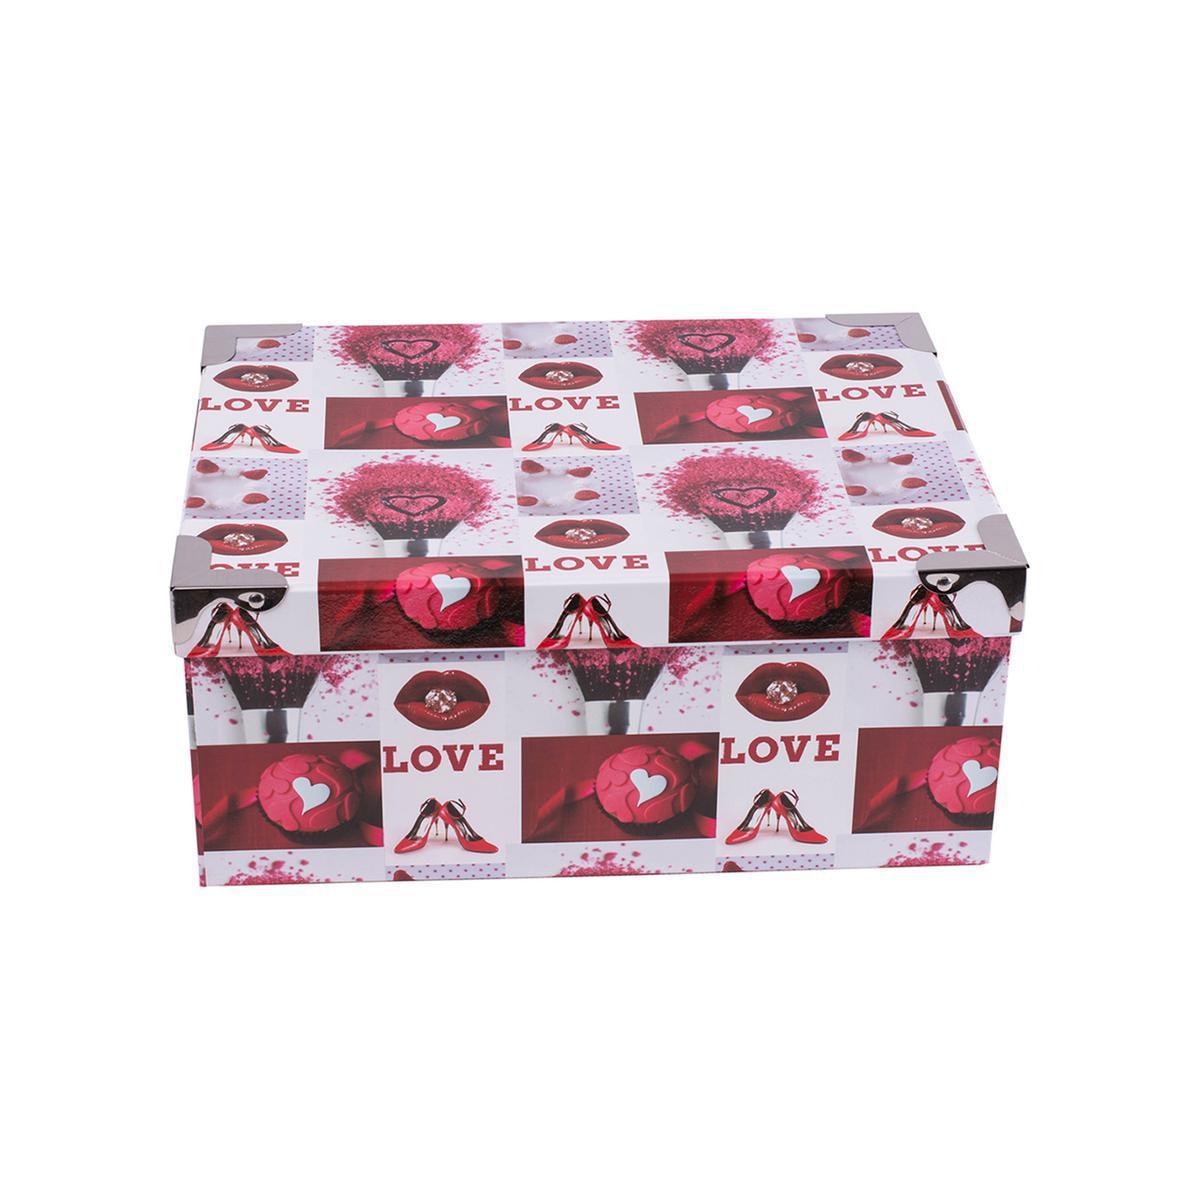 Boîte Love - Carton - 34 x 25,5 x H 14,5 cm - Multicolore